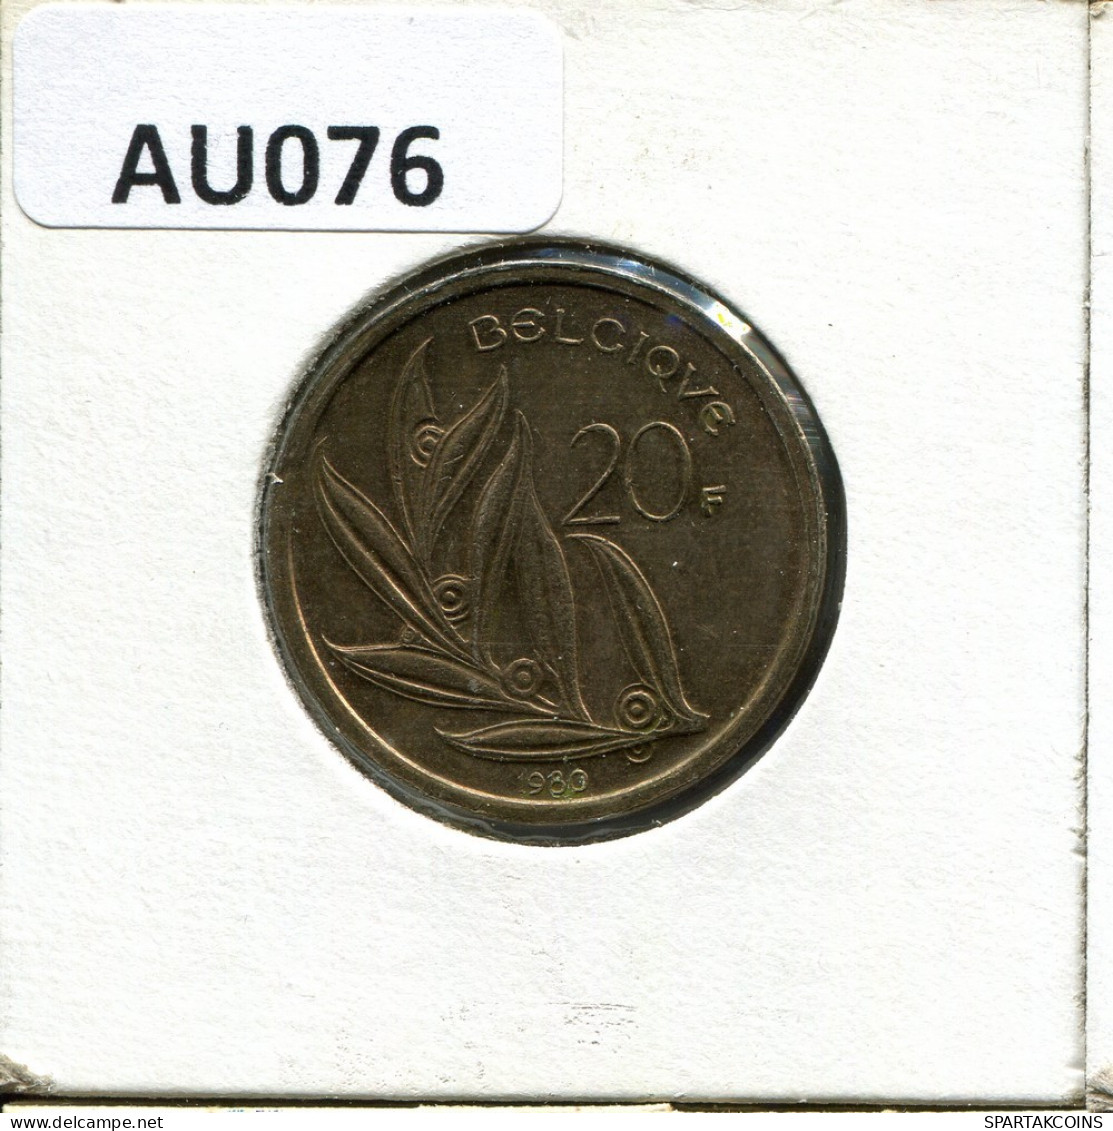 20 FRANCS 1980 Französisch Text BELGIEN BELGIUM Münze #AU076.D.A - 20 Francs